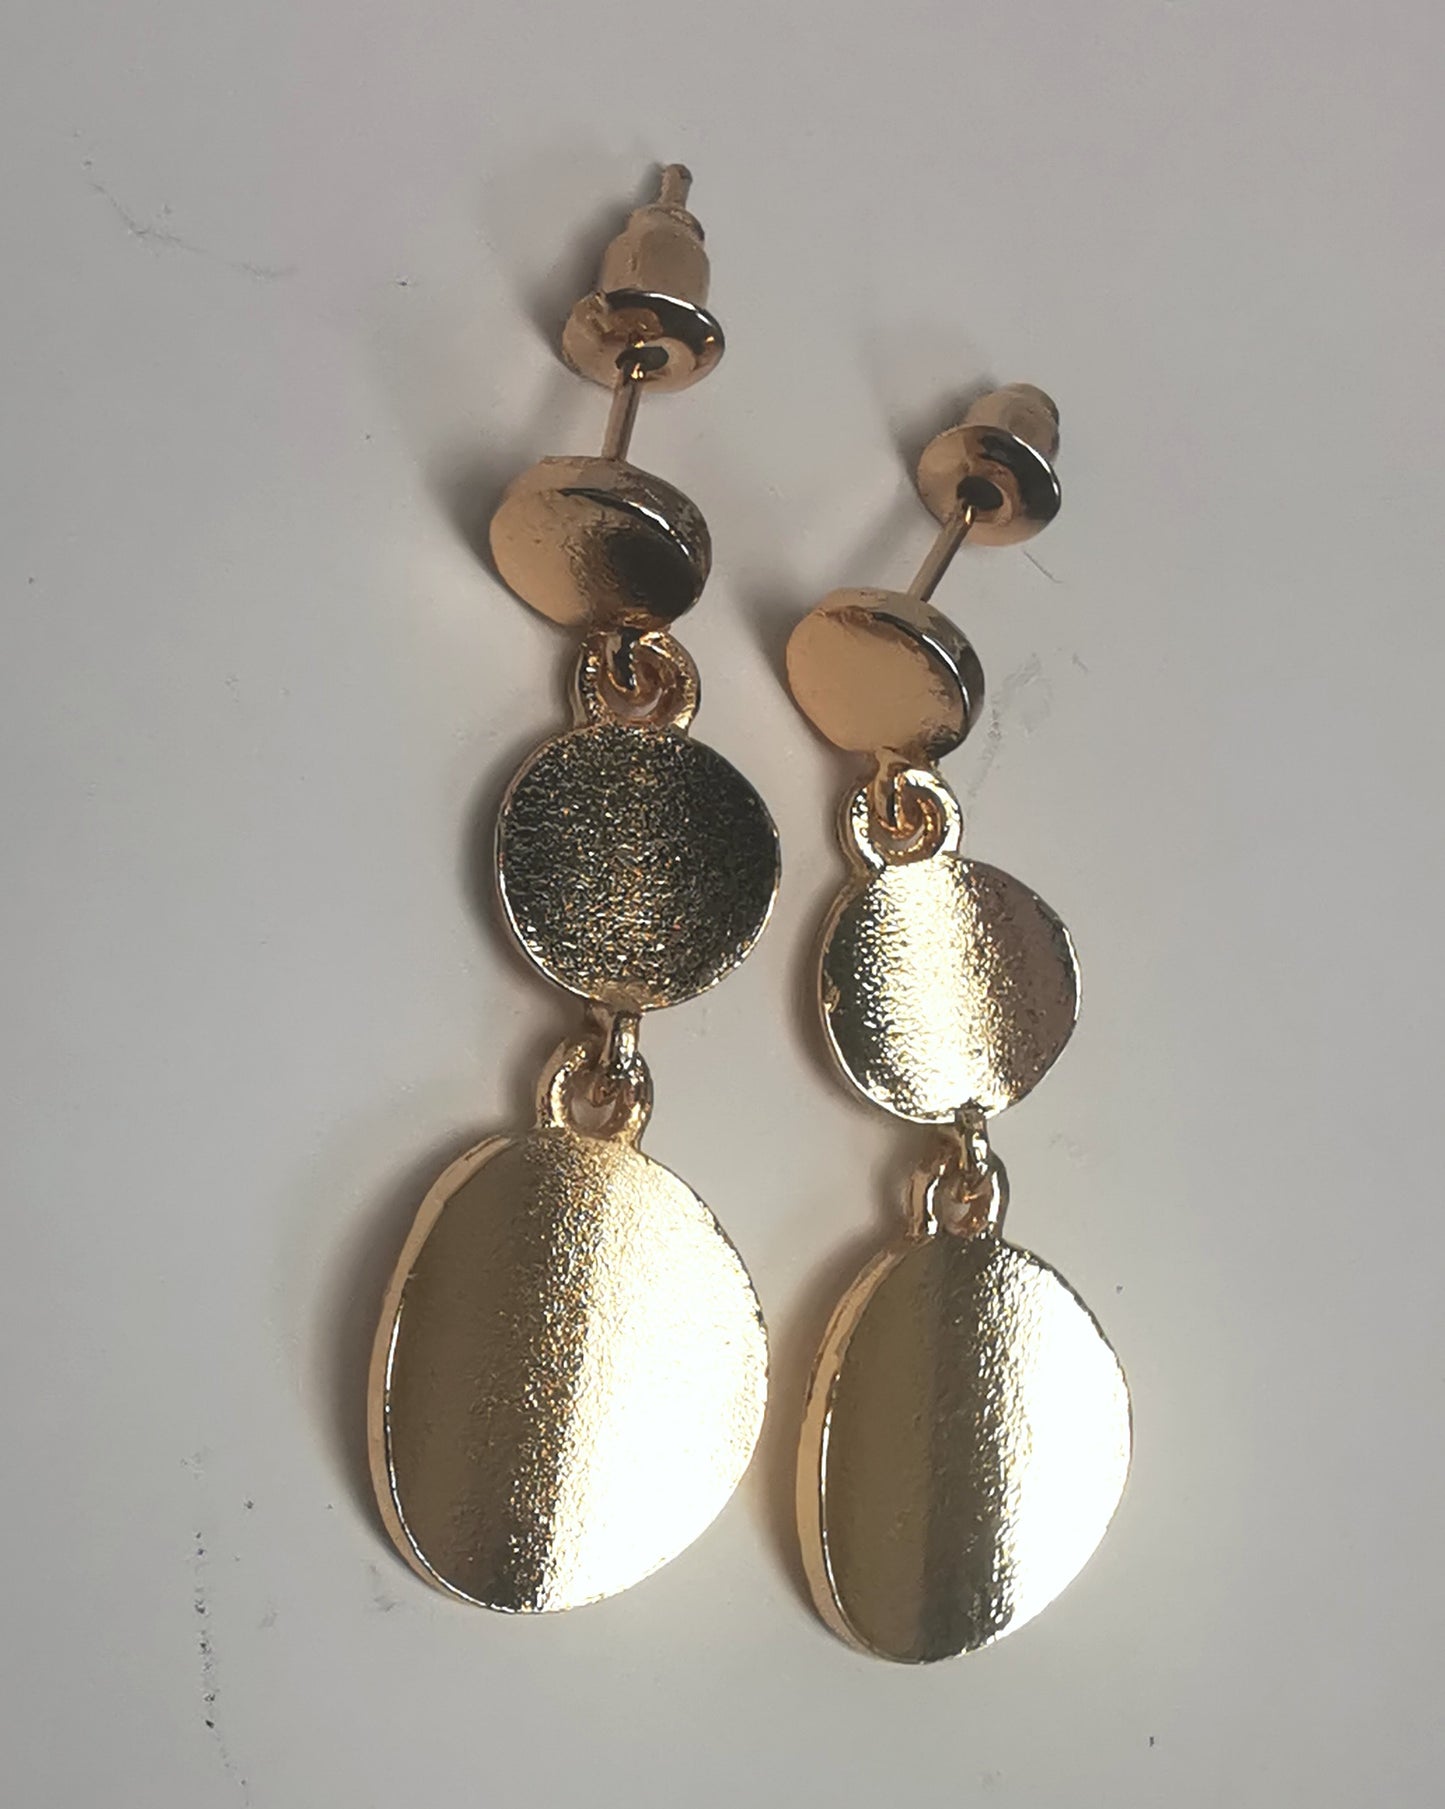 Boucles d'oreilles pendantes sur clous en métal doré texturé. Un disque de10mm sur clou en dessous un autre de 12mm et un troisième de 16mm. Présentées par paire, cote à cote, posées sur fond blanc. Vue de dessus.